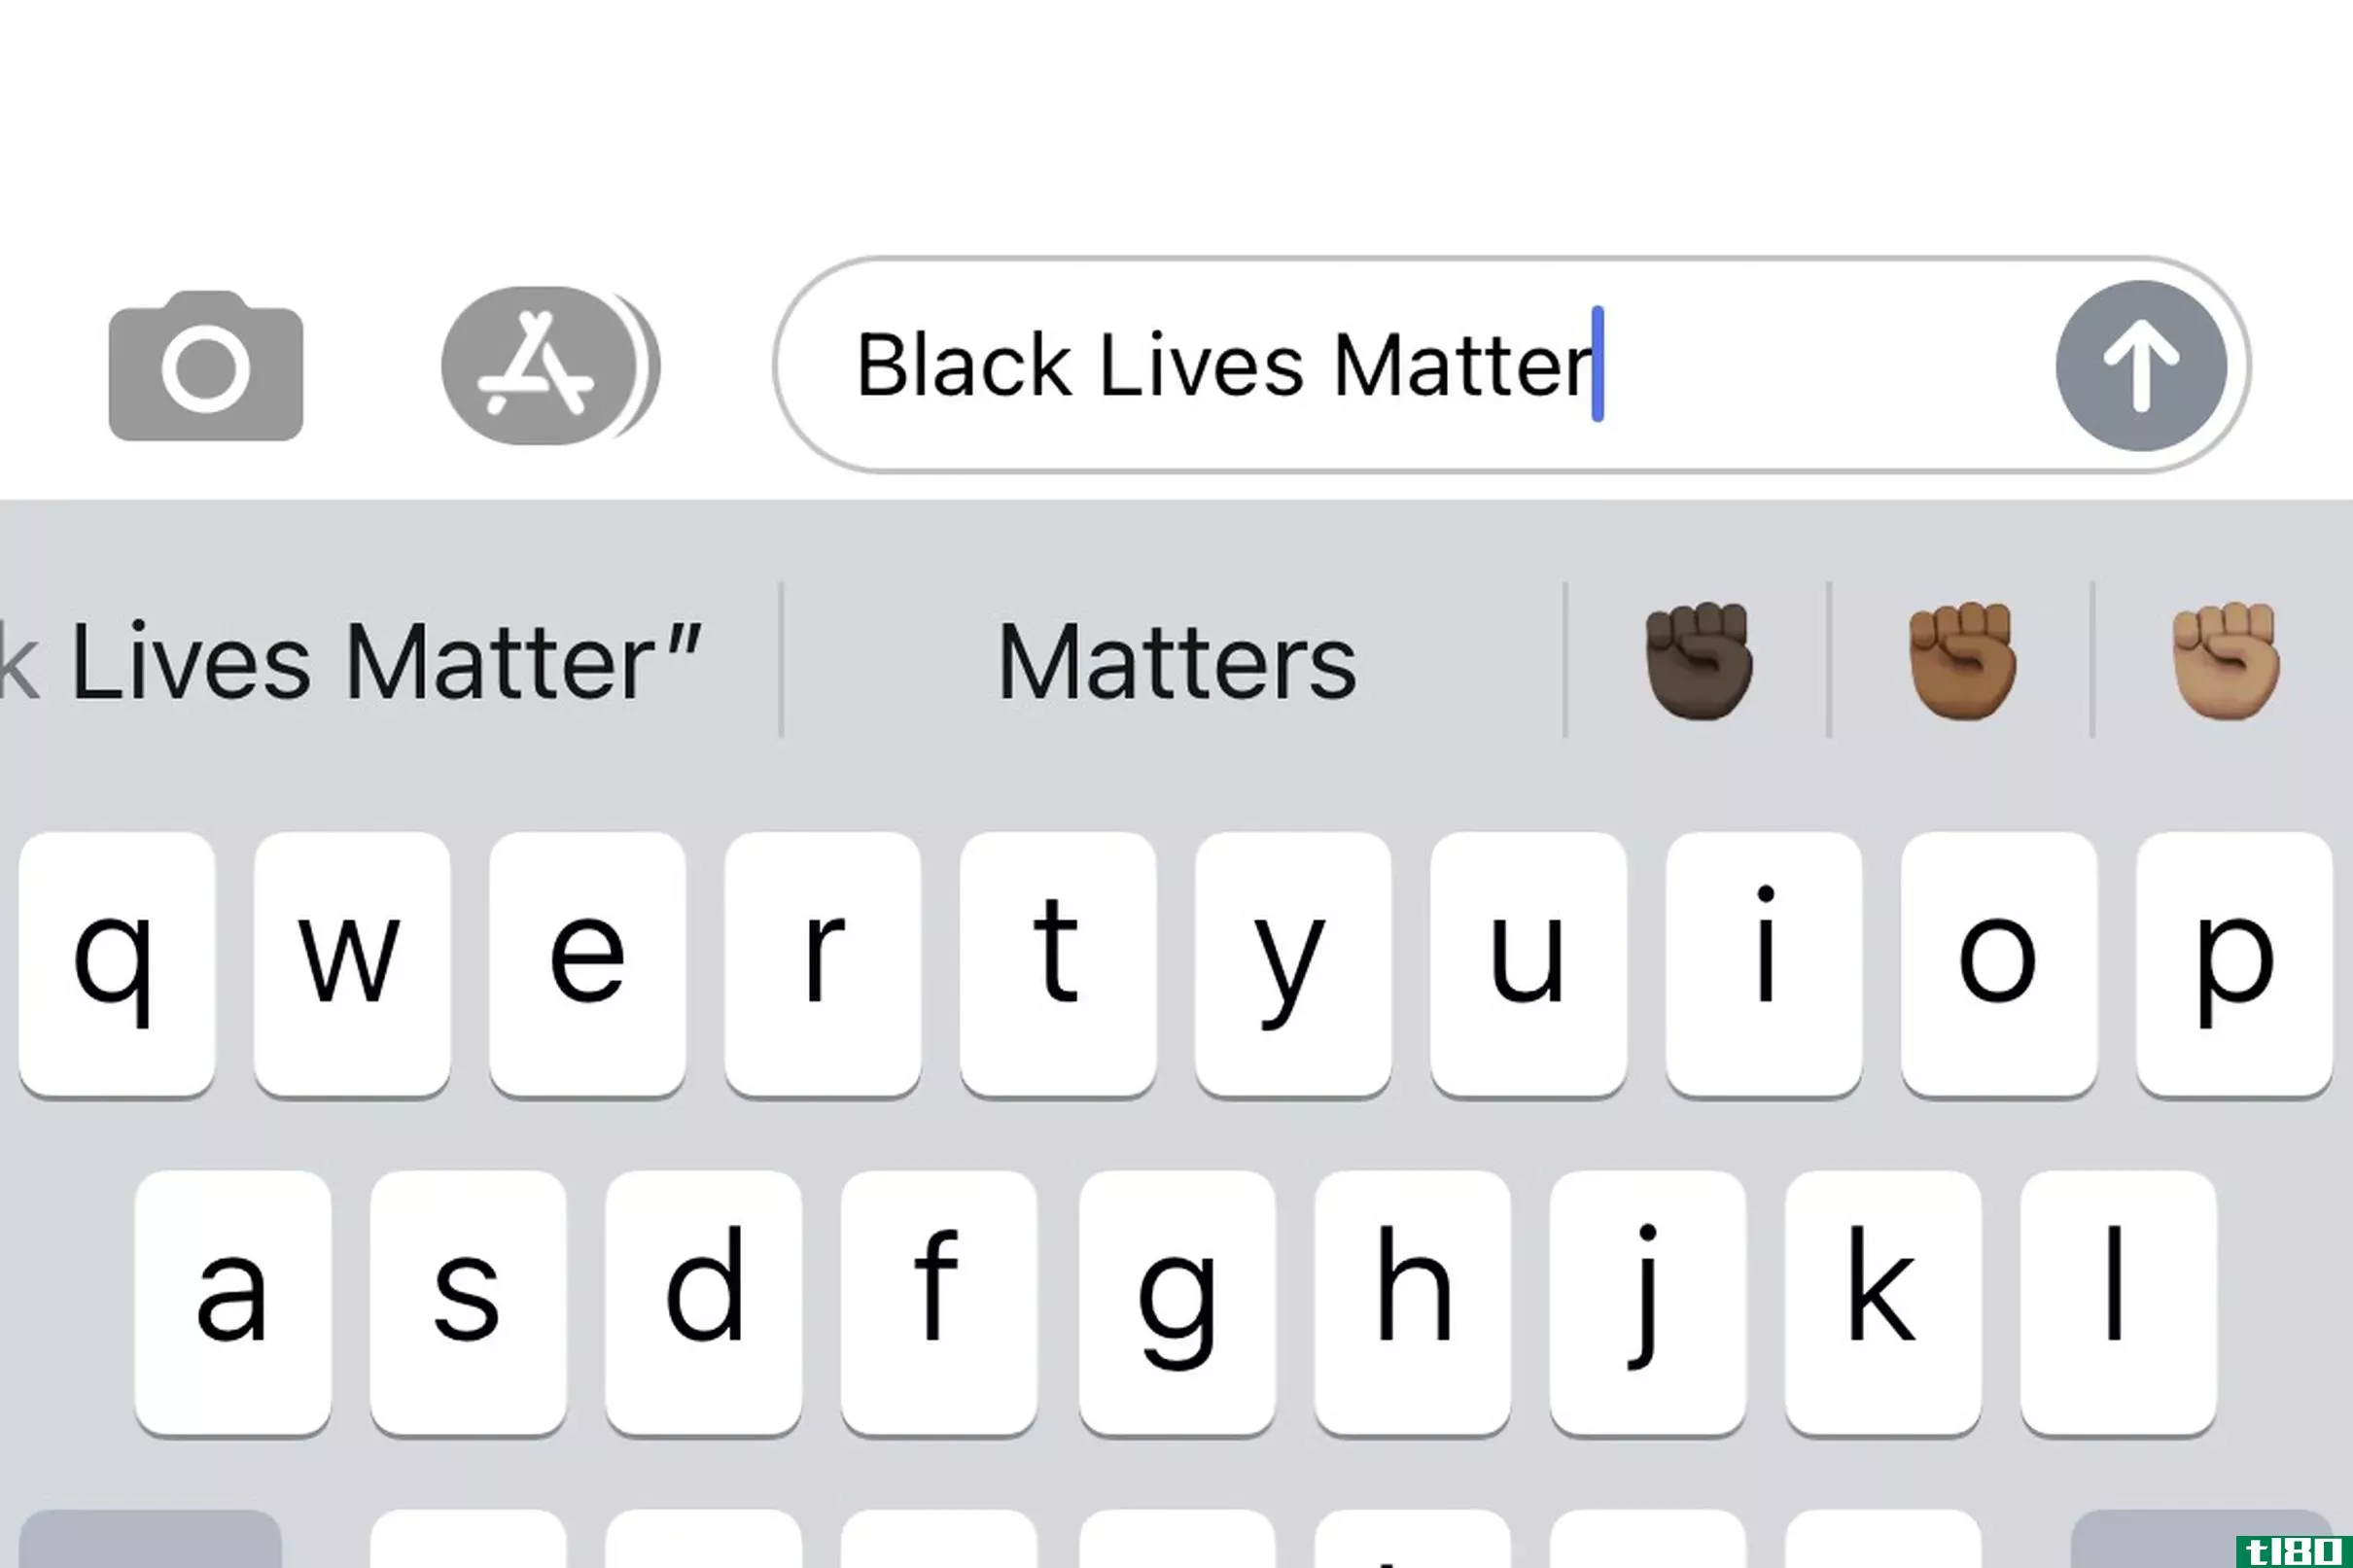 ios键盘现在建议如果你键入“黑人生活很重要”或“blm”，使用黑拳表情符号